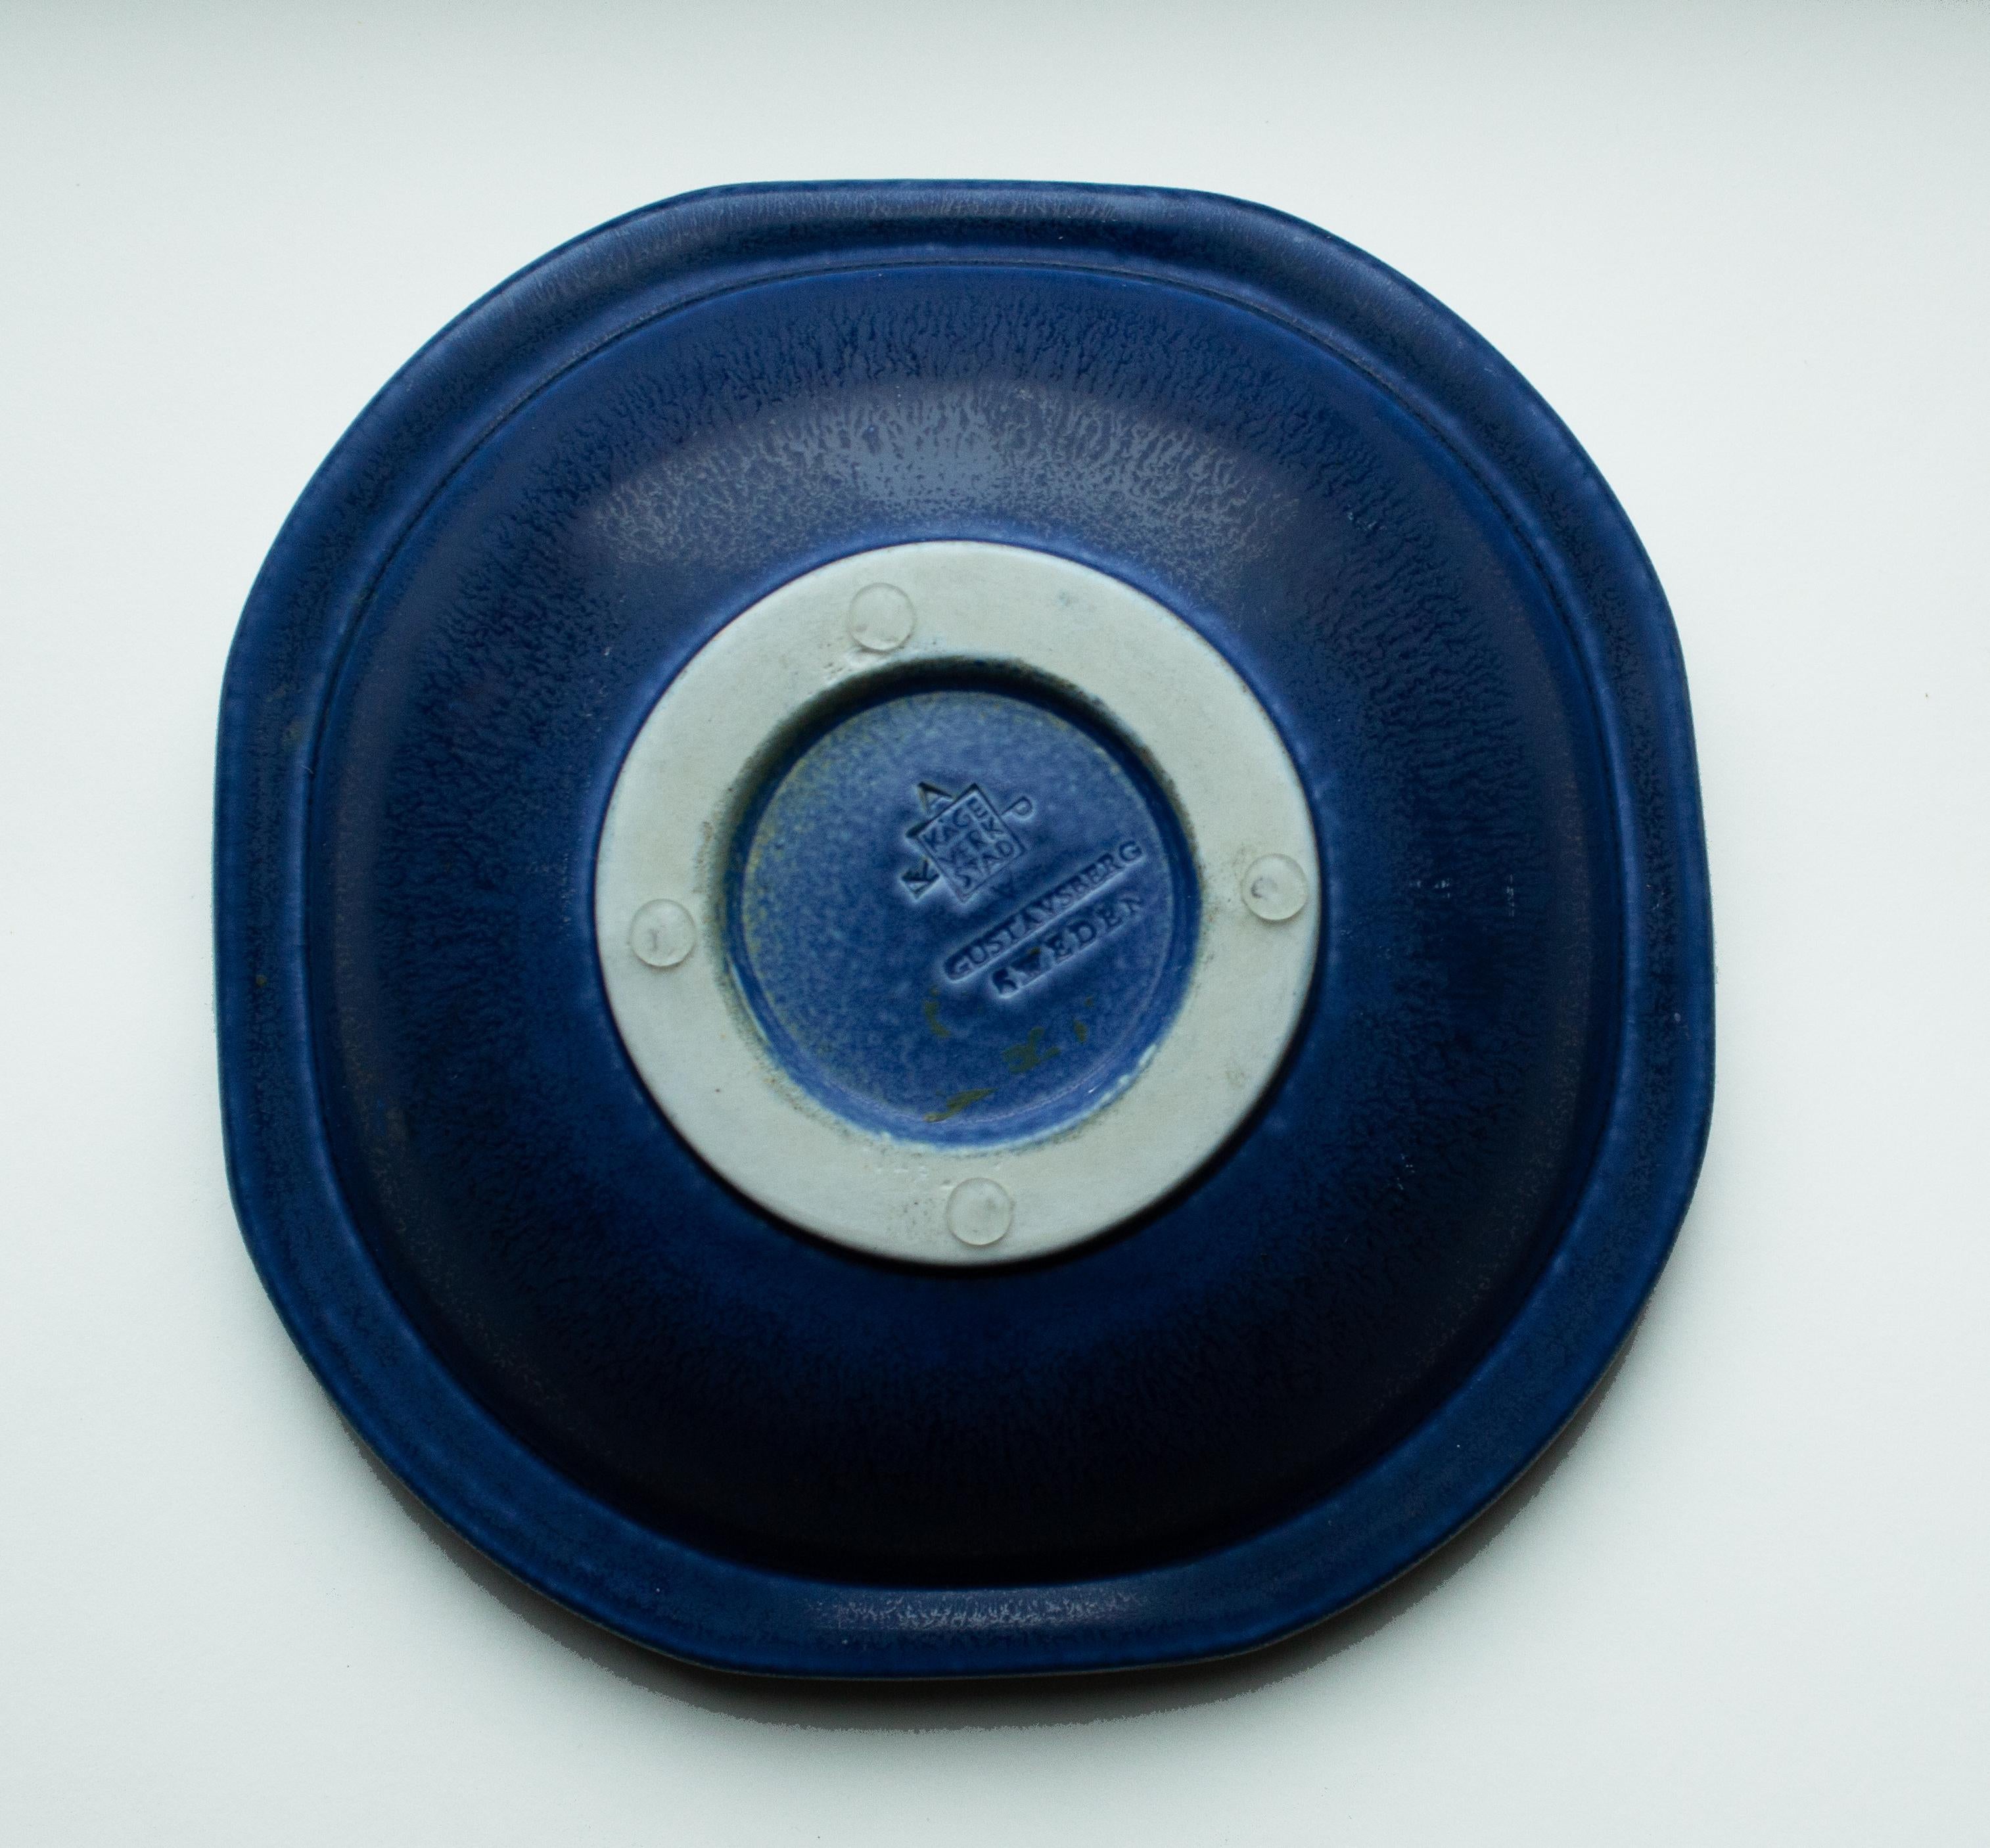 Bol bleu en grès de Wilhelm Kåge de 1958, Gustavsberg, Suède. Bol de Wilhelm Kåge de forme légèrement octogonale, à glaçure bleue et décor en relief. Il a été conçu en 1958 dans son studio de Gustavsberg. Une œuvre d'art brillante du milieu du